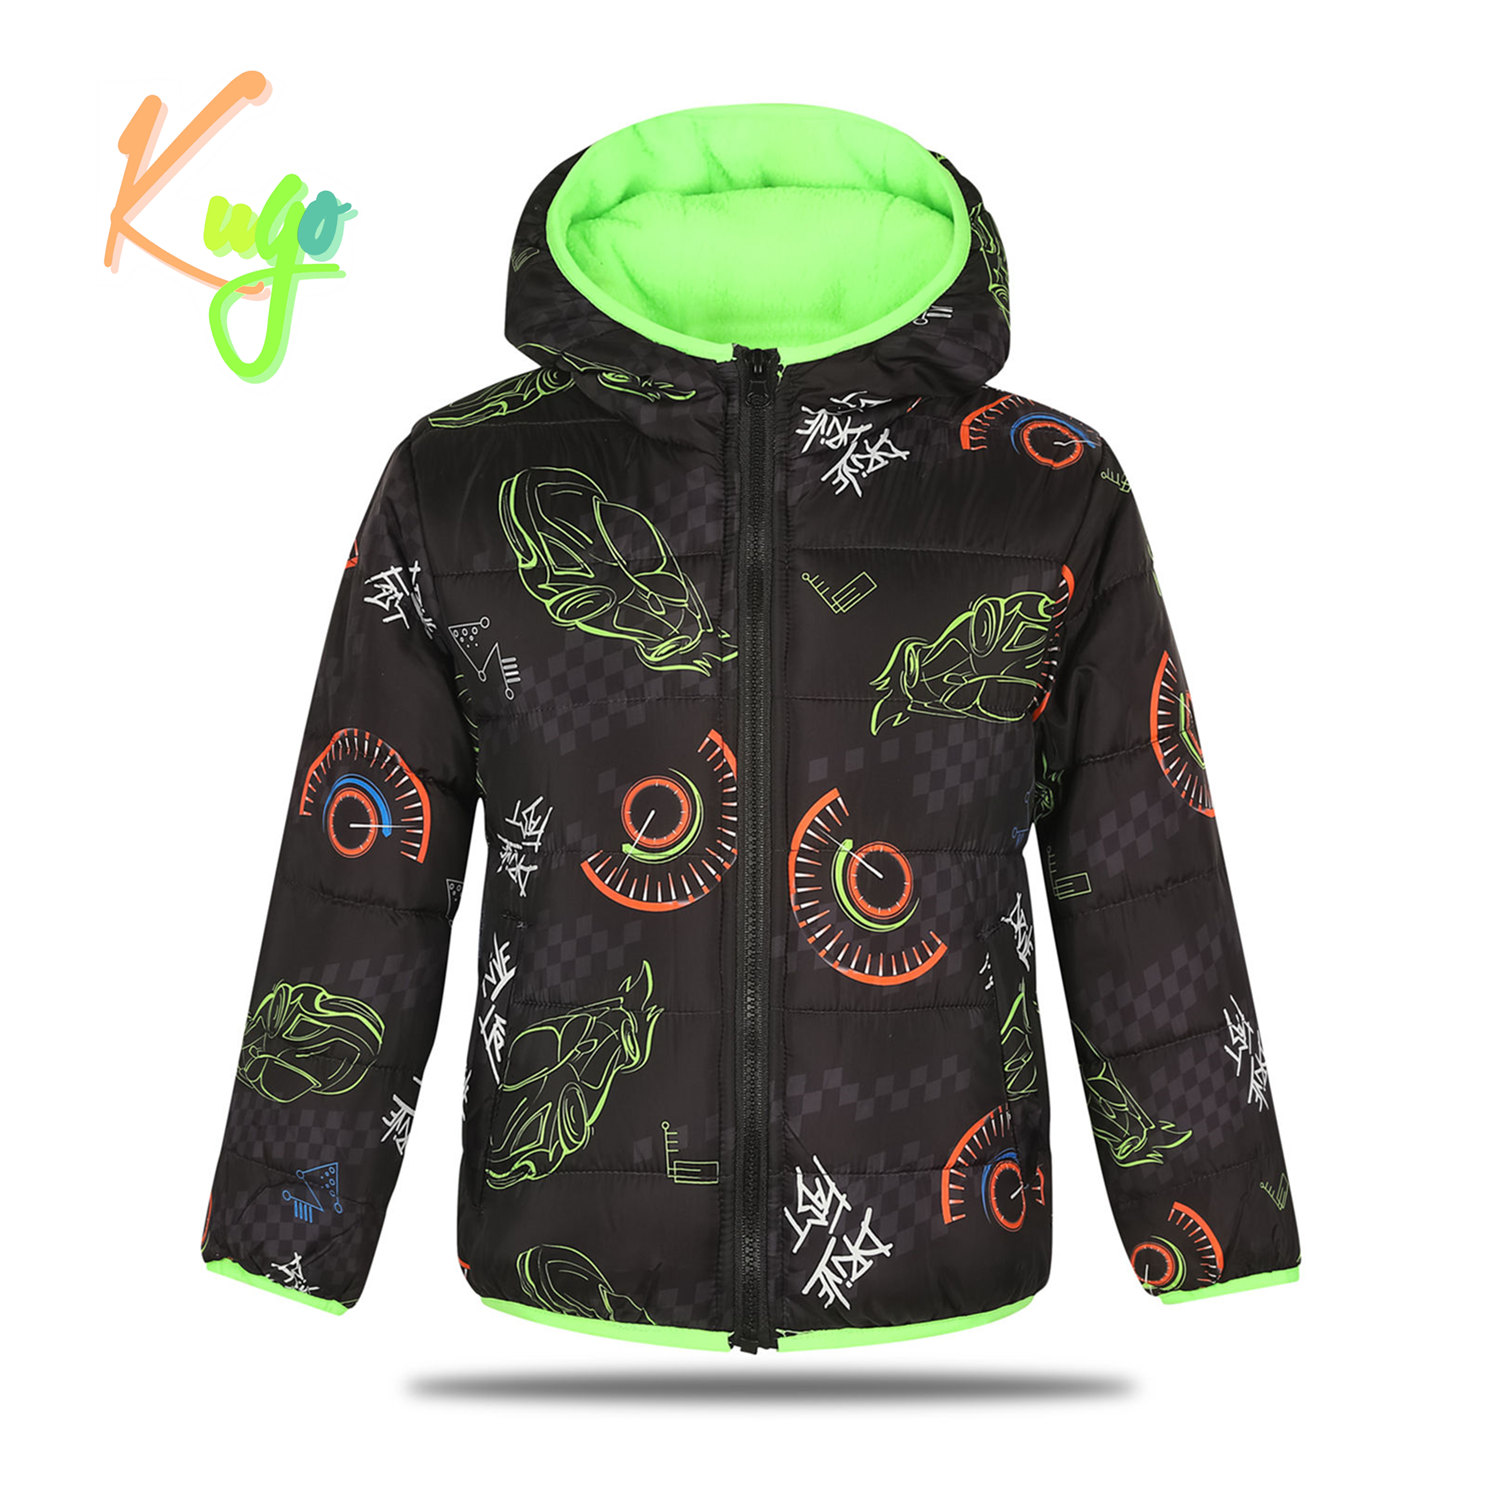 Chlapecká zimní bunda - KUGO FB0296, černá Barva: Černá, Velikost: 110